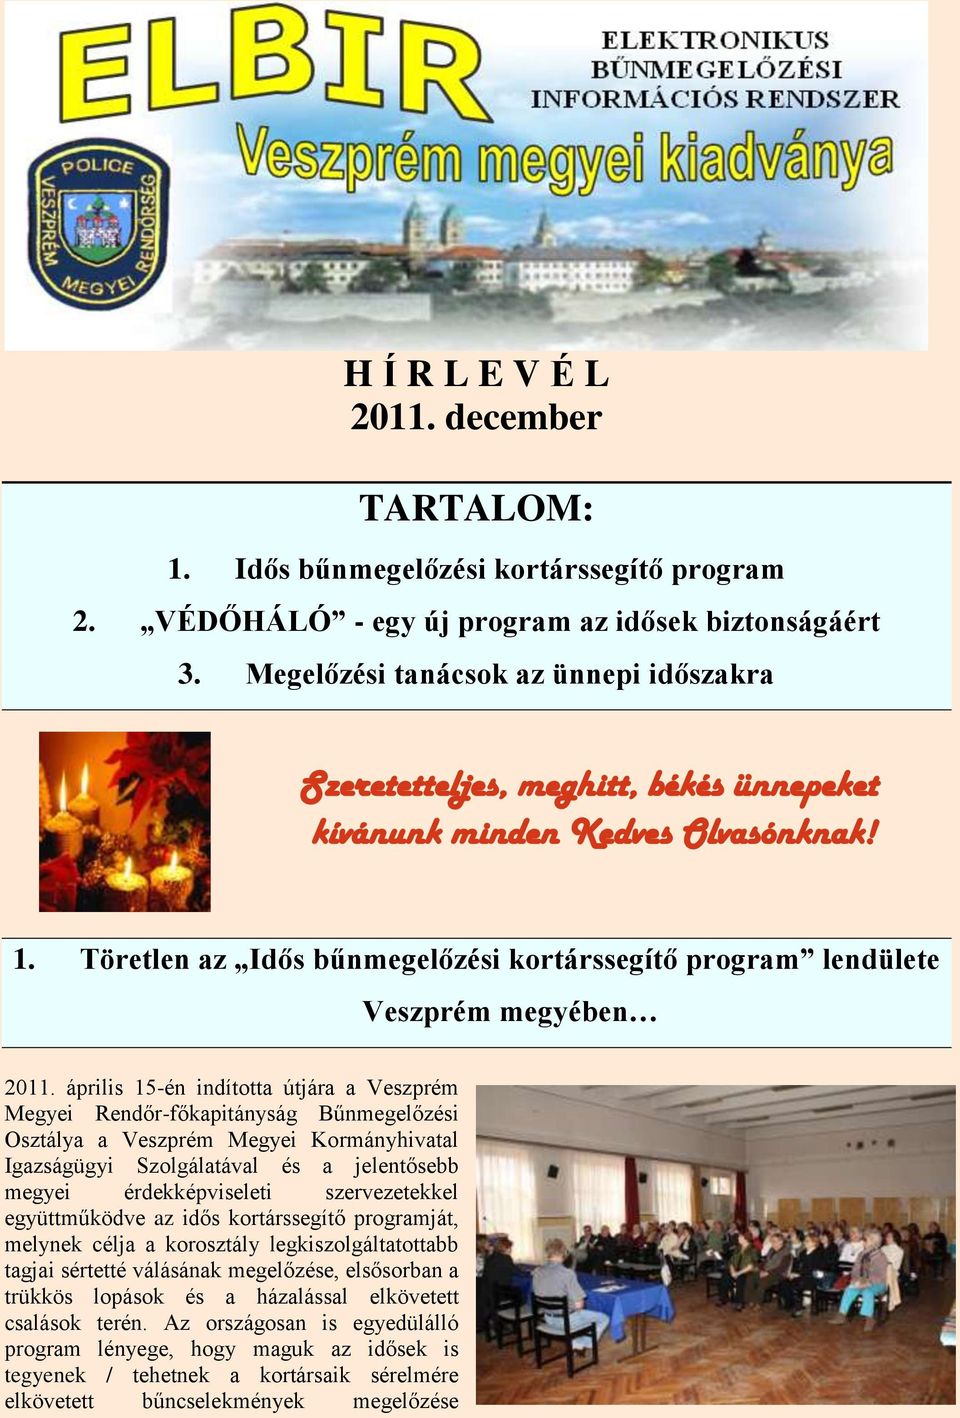 Töretlen az Idős bűnmegelőzési kortárssegítő program lendülete Veszprém megyében 2011.